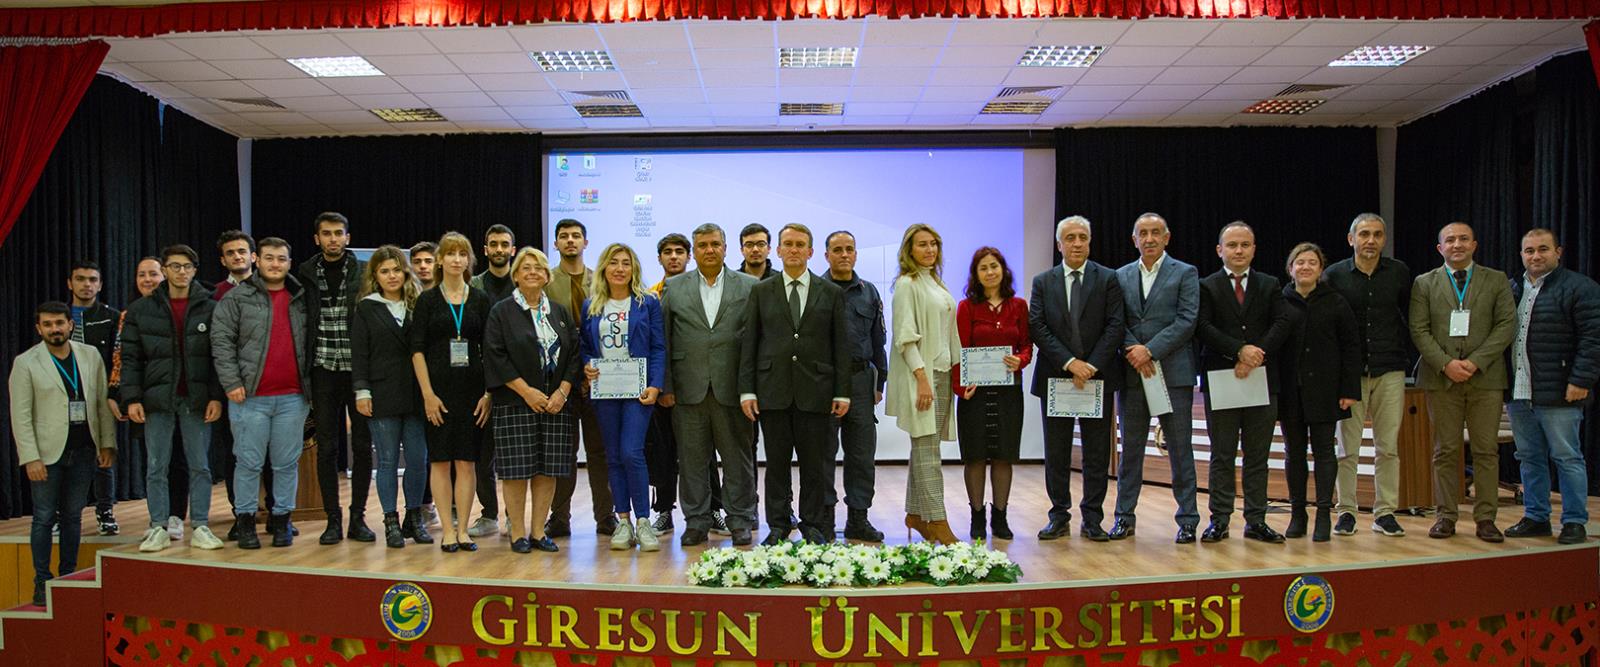 Giresun Üniversitesi’nde Uluslararası Çevre, Enerji ve Ekonomi Kongresi Gerçekleştirildi